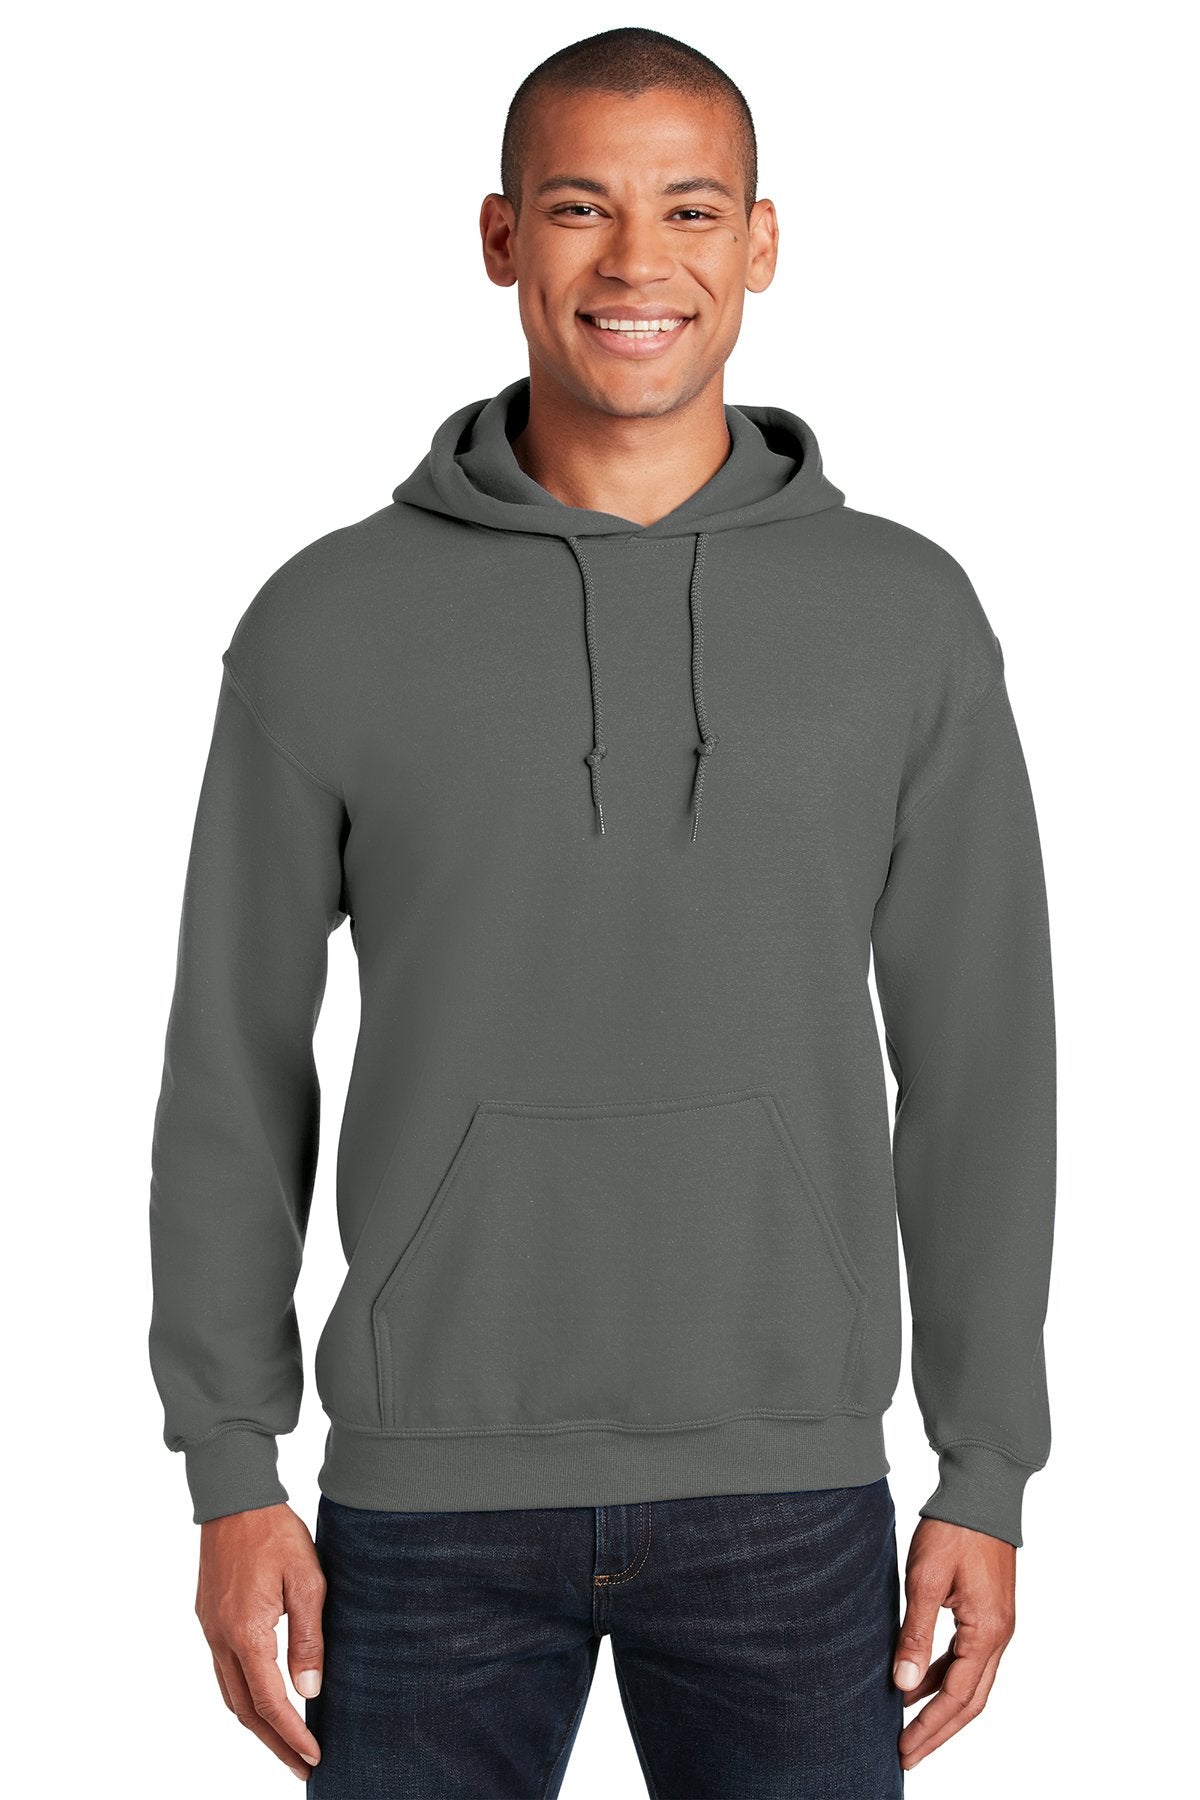 Gildan Charcoal 18500 business sweatshirts with logo